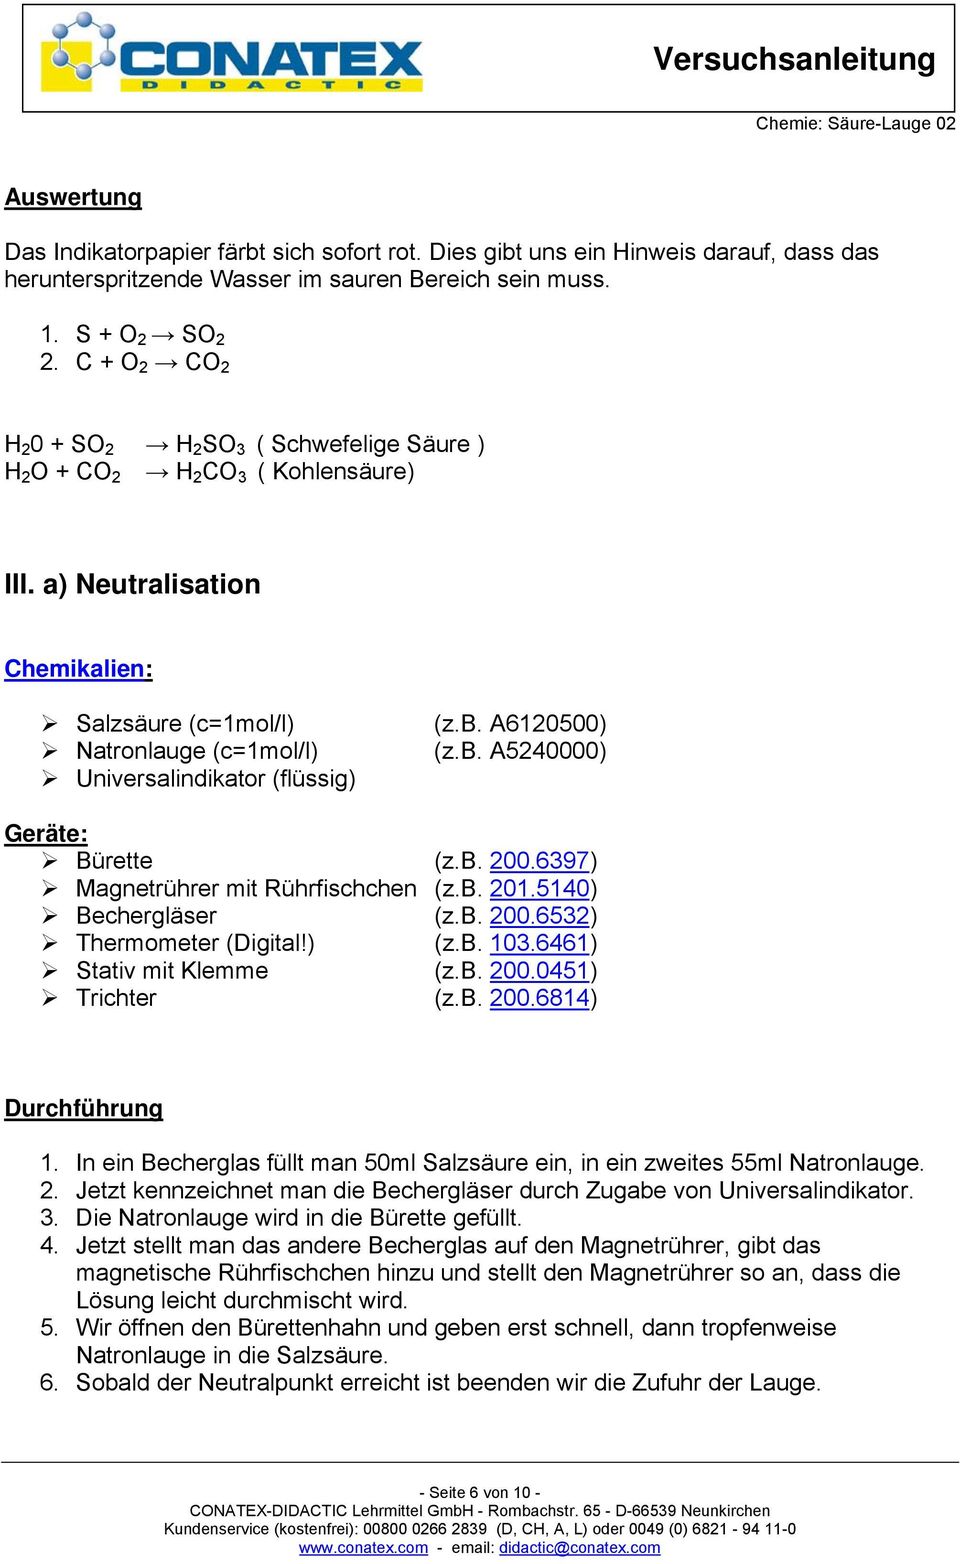 A6120500) Natronlauge (c=1mol/l) (z.b. A5240000) Universalindikator (flüssig) Geräte: Bürette (z.b. 200.6397) Magnetrührer mit Rührfischchen (z.b. 201.5140) Bechergläser (z.b. 200.6532) Thermometer (Digital!